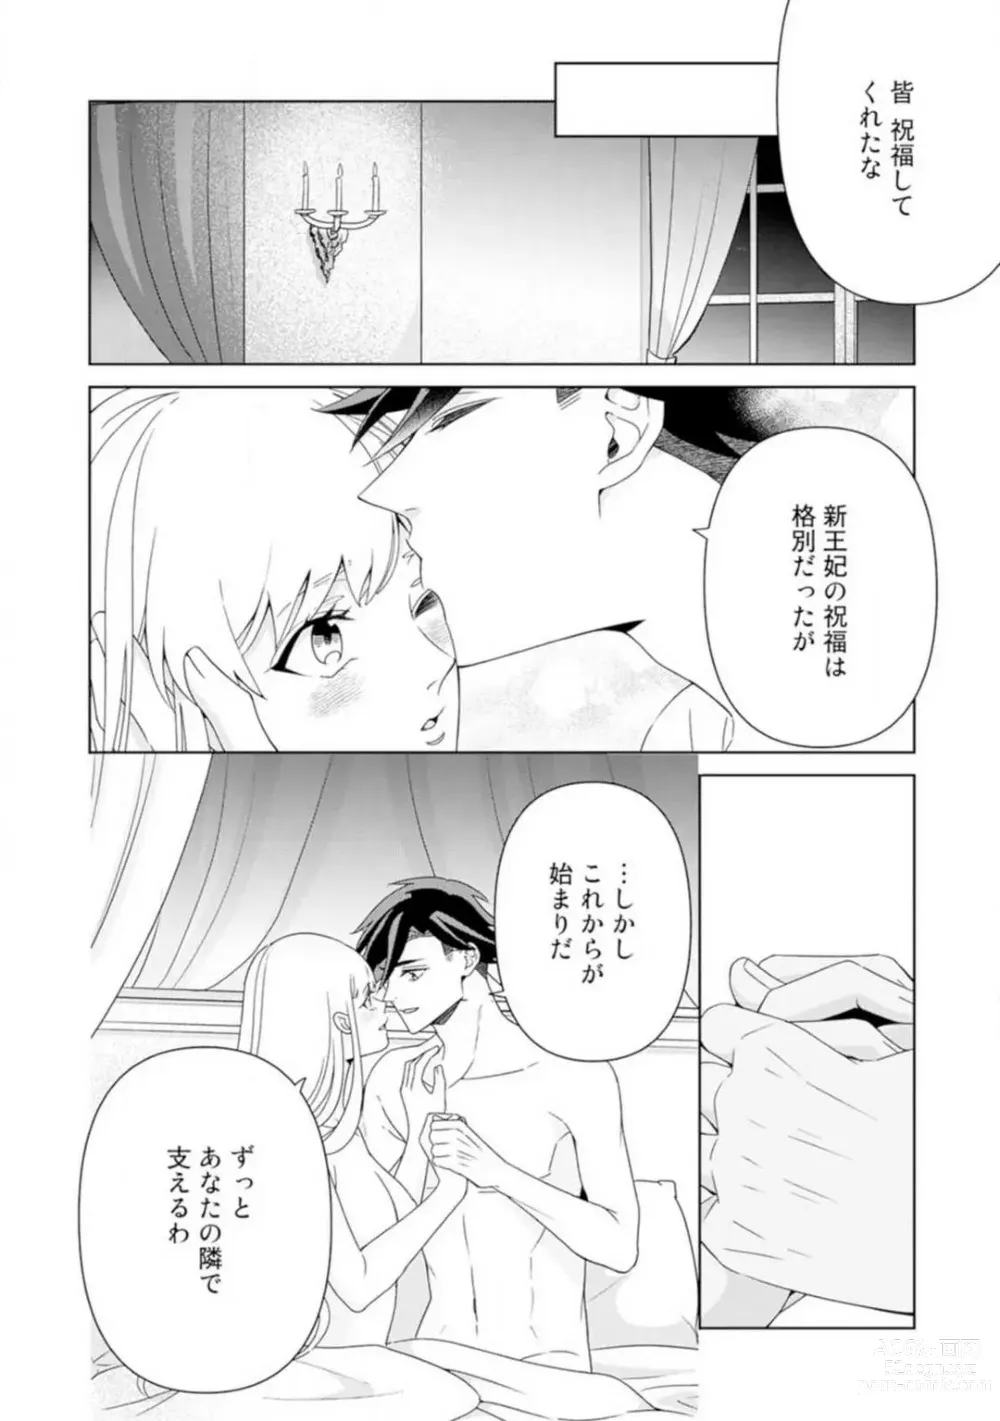 Page 130 of manga Shakunetsu no Ou no Inai ~Atsui Yubi ni Tokasarete~ 1-6